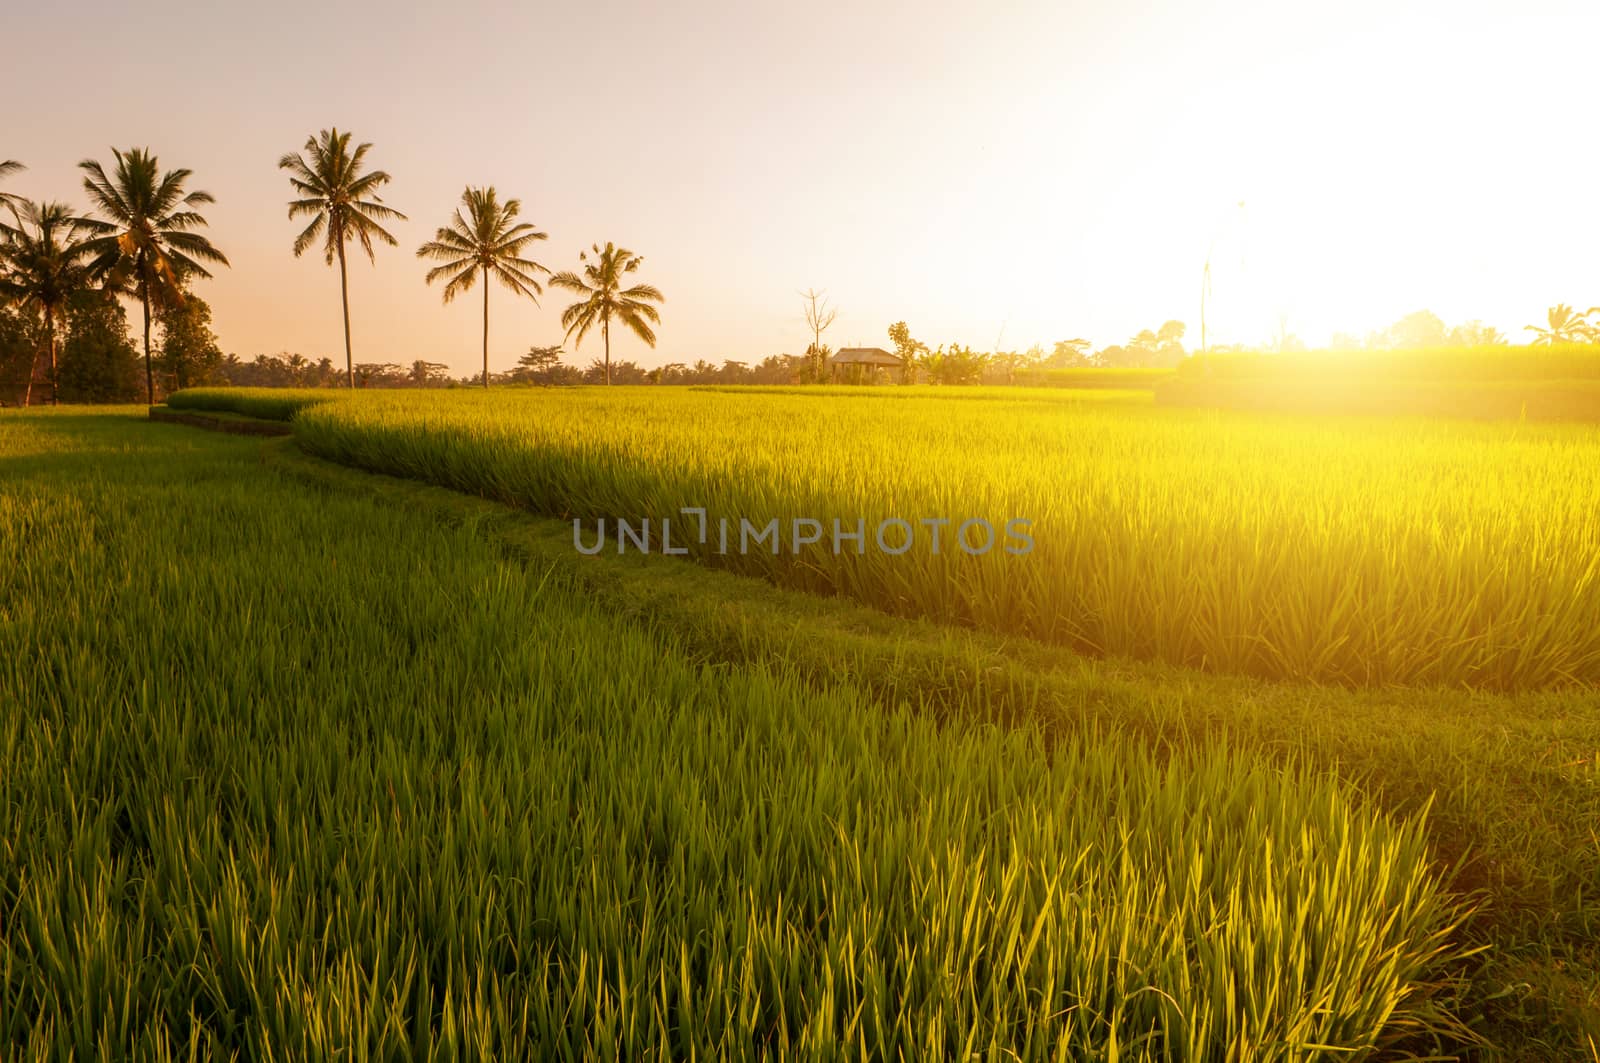 Paddy rice fields  by szefei